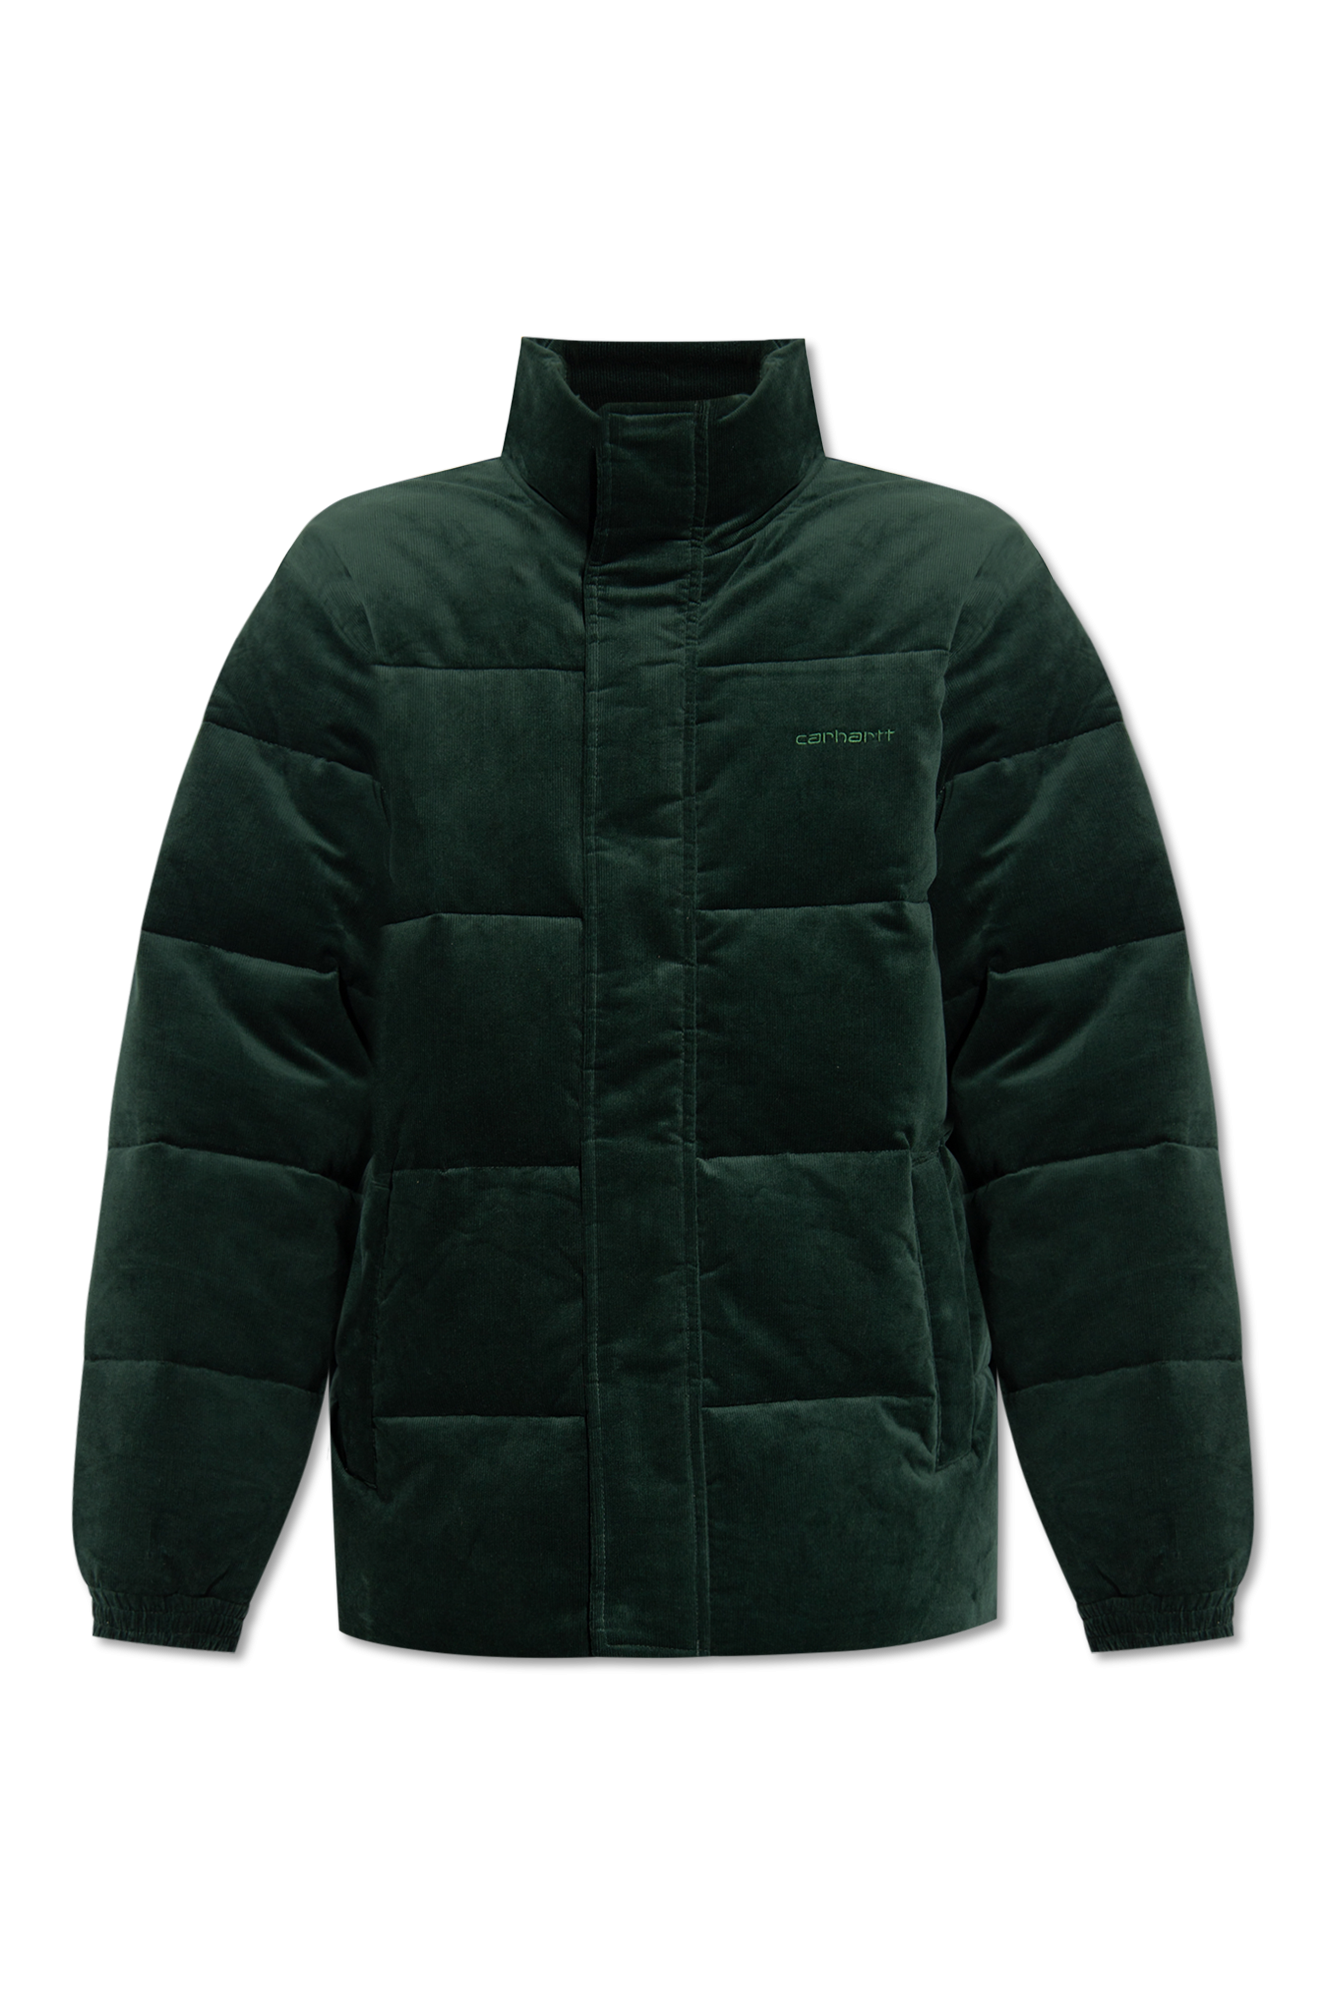 Carhartt WIP 'Layton' corduroy jacket | Men's Clothing | Vitkac